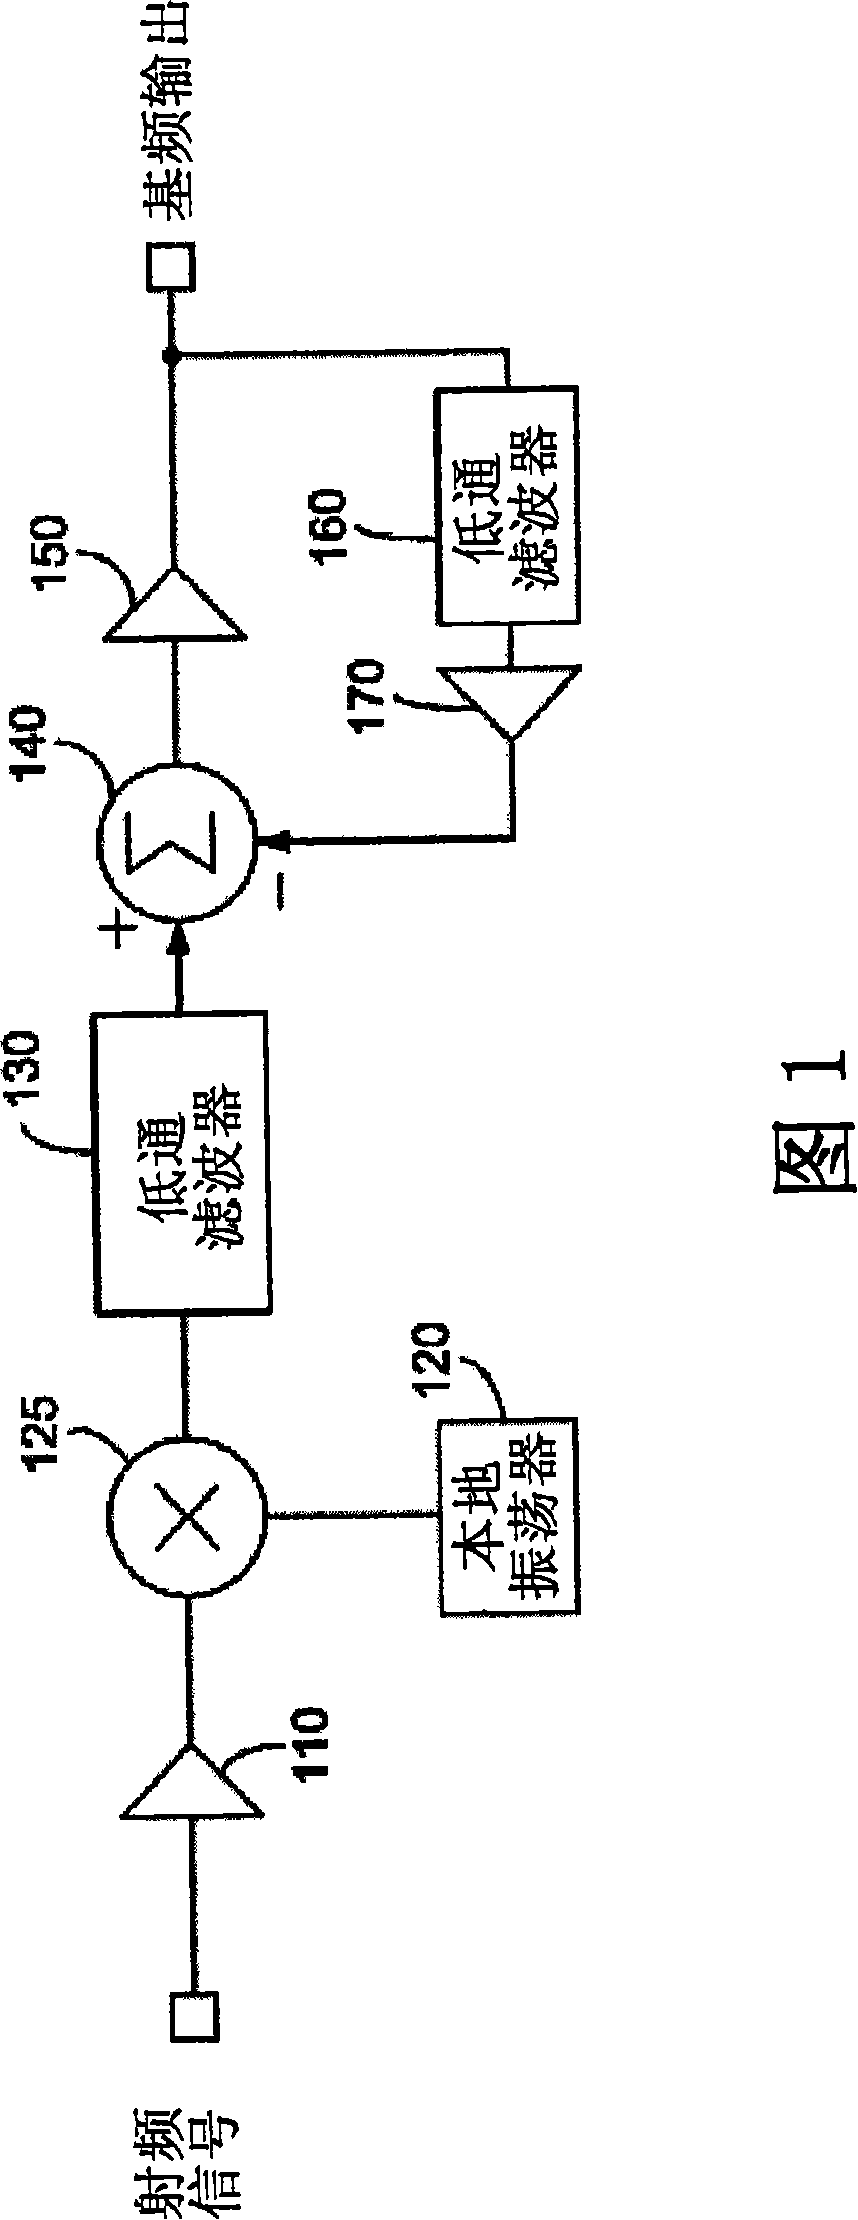 Servo loop circuit